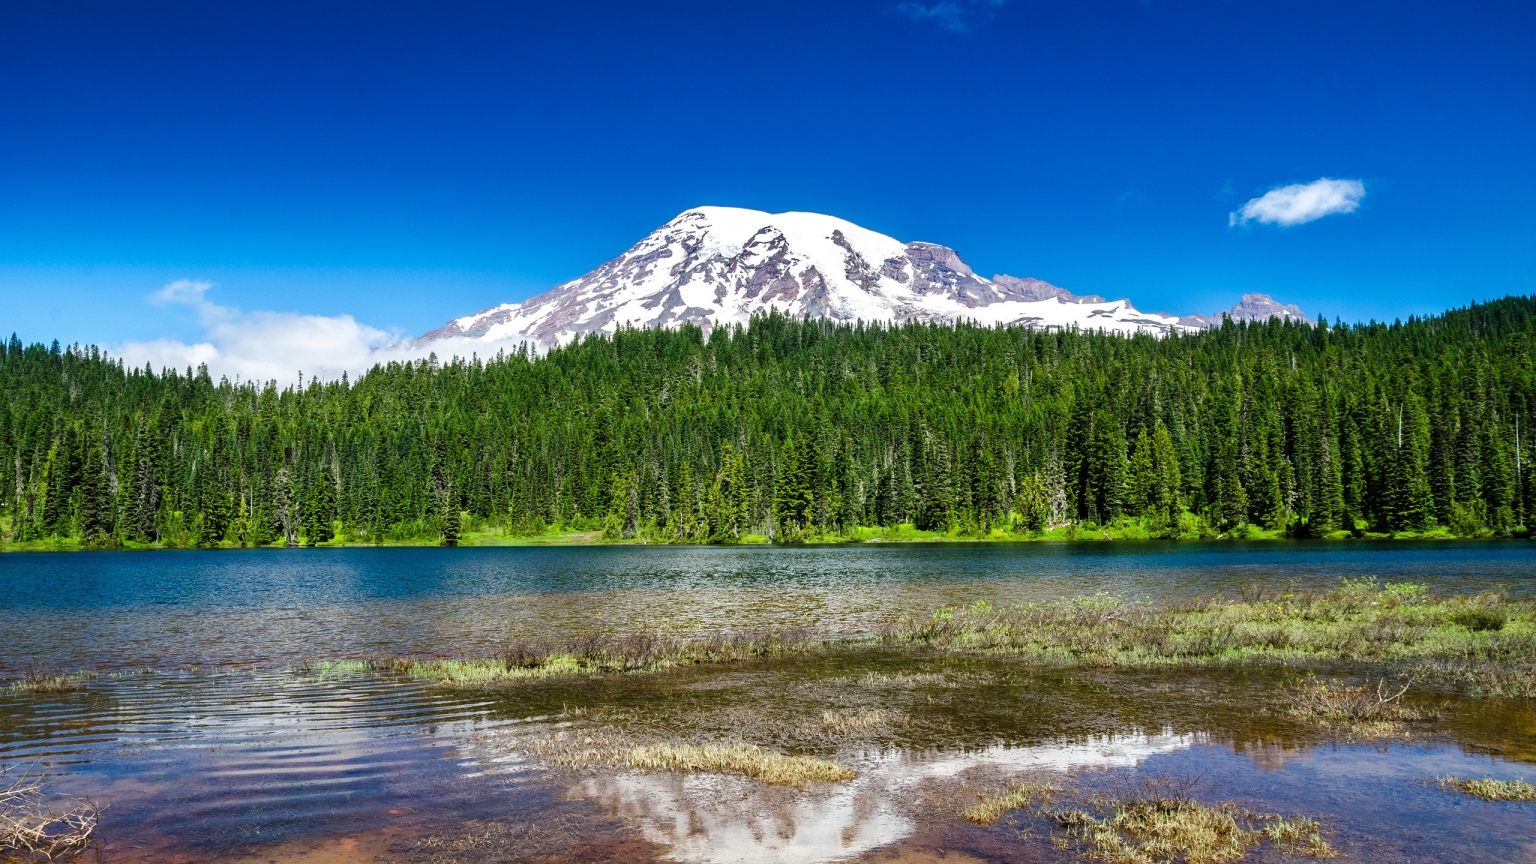 Mount Rainier National Park for 1536 x 864 HDTV resolution